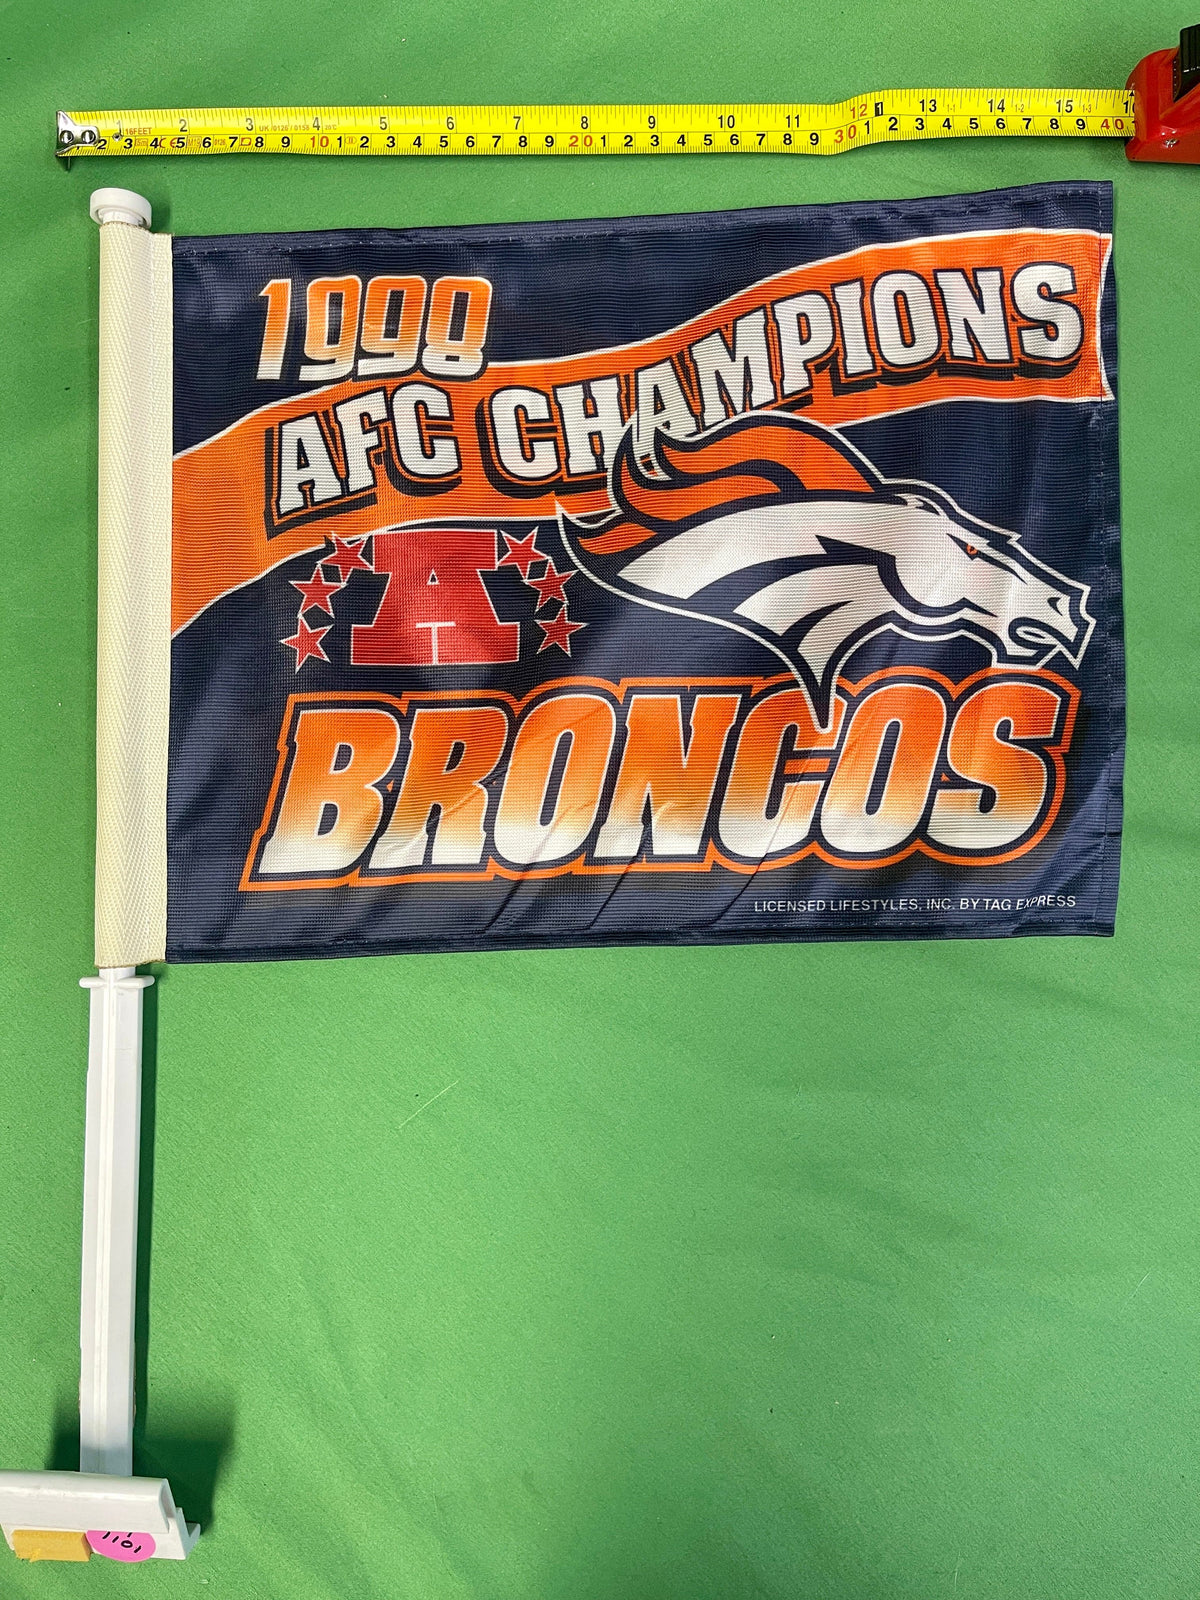 NFL Denver Broncos VTG Double-Sided Car Flag 1998 AFC Champions